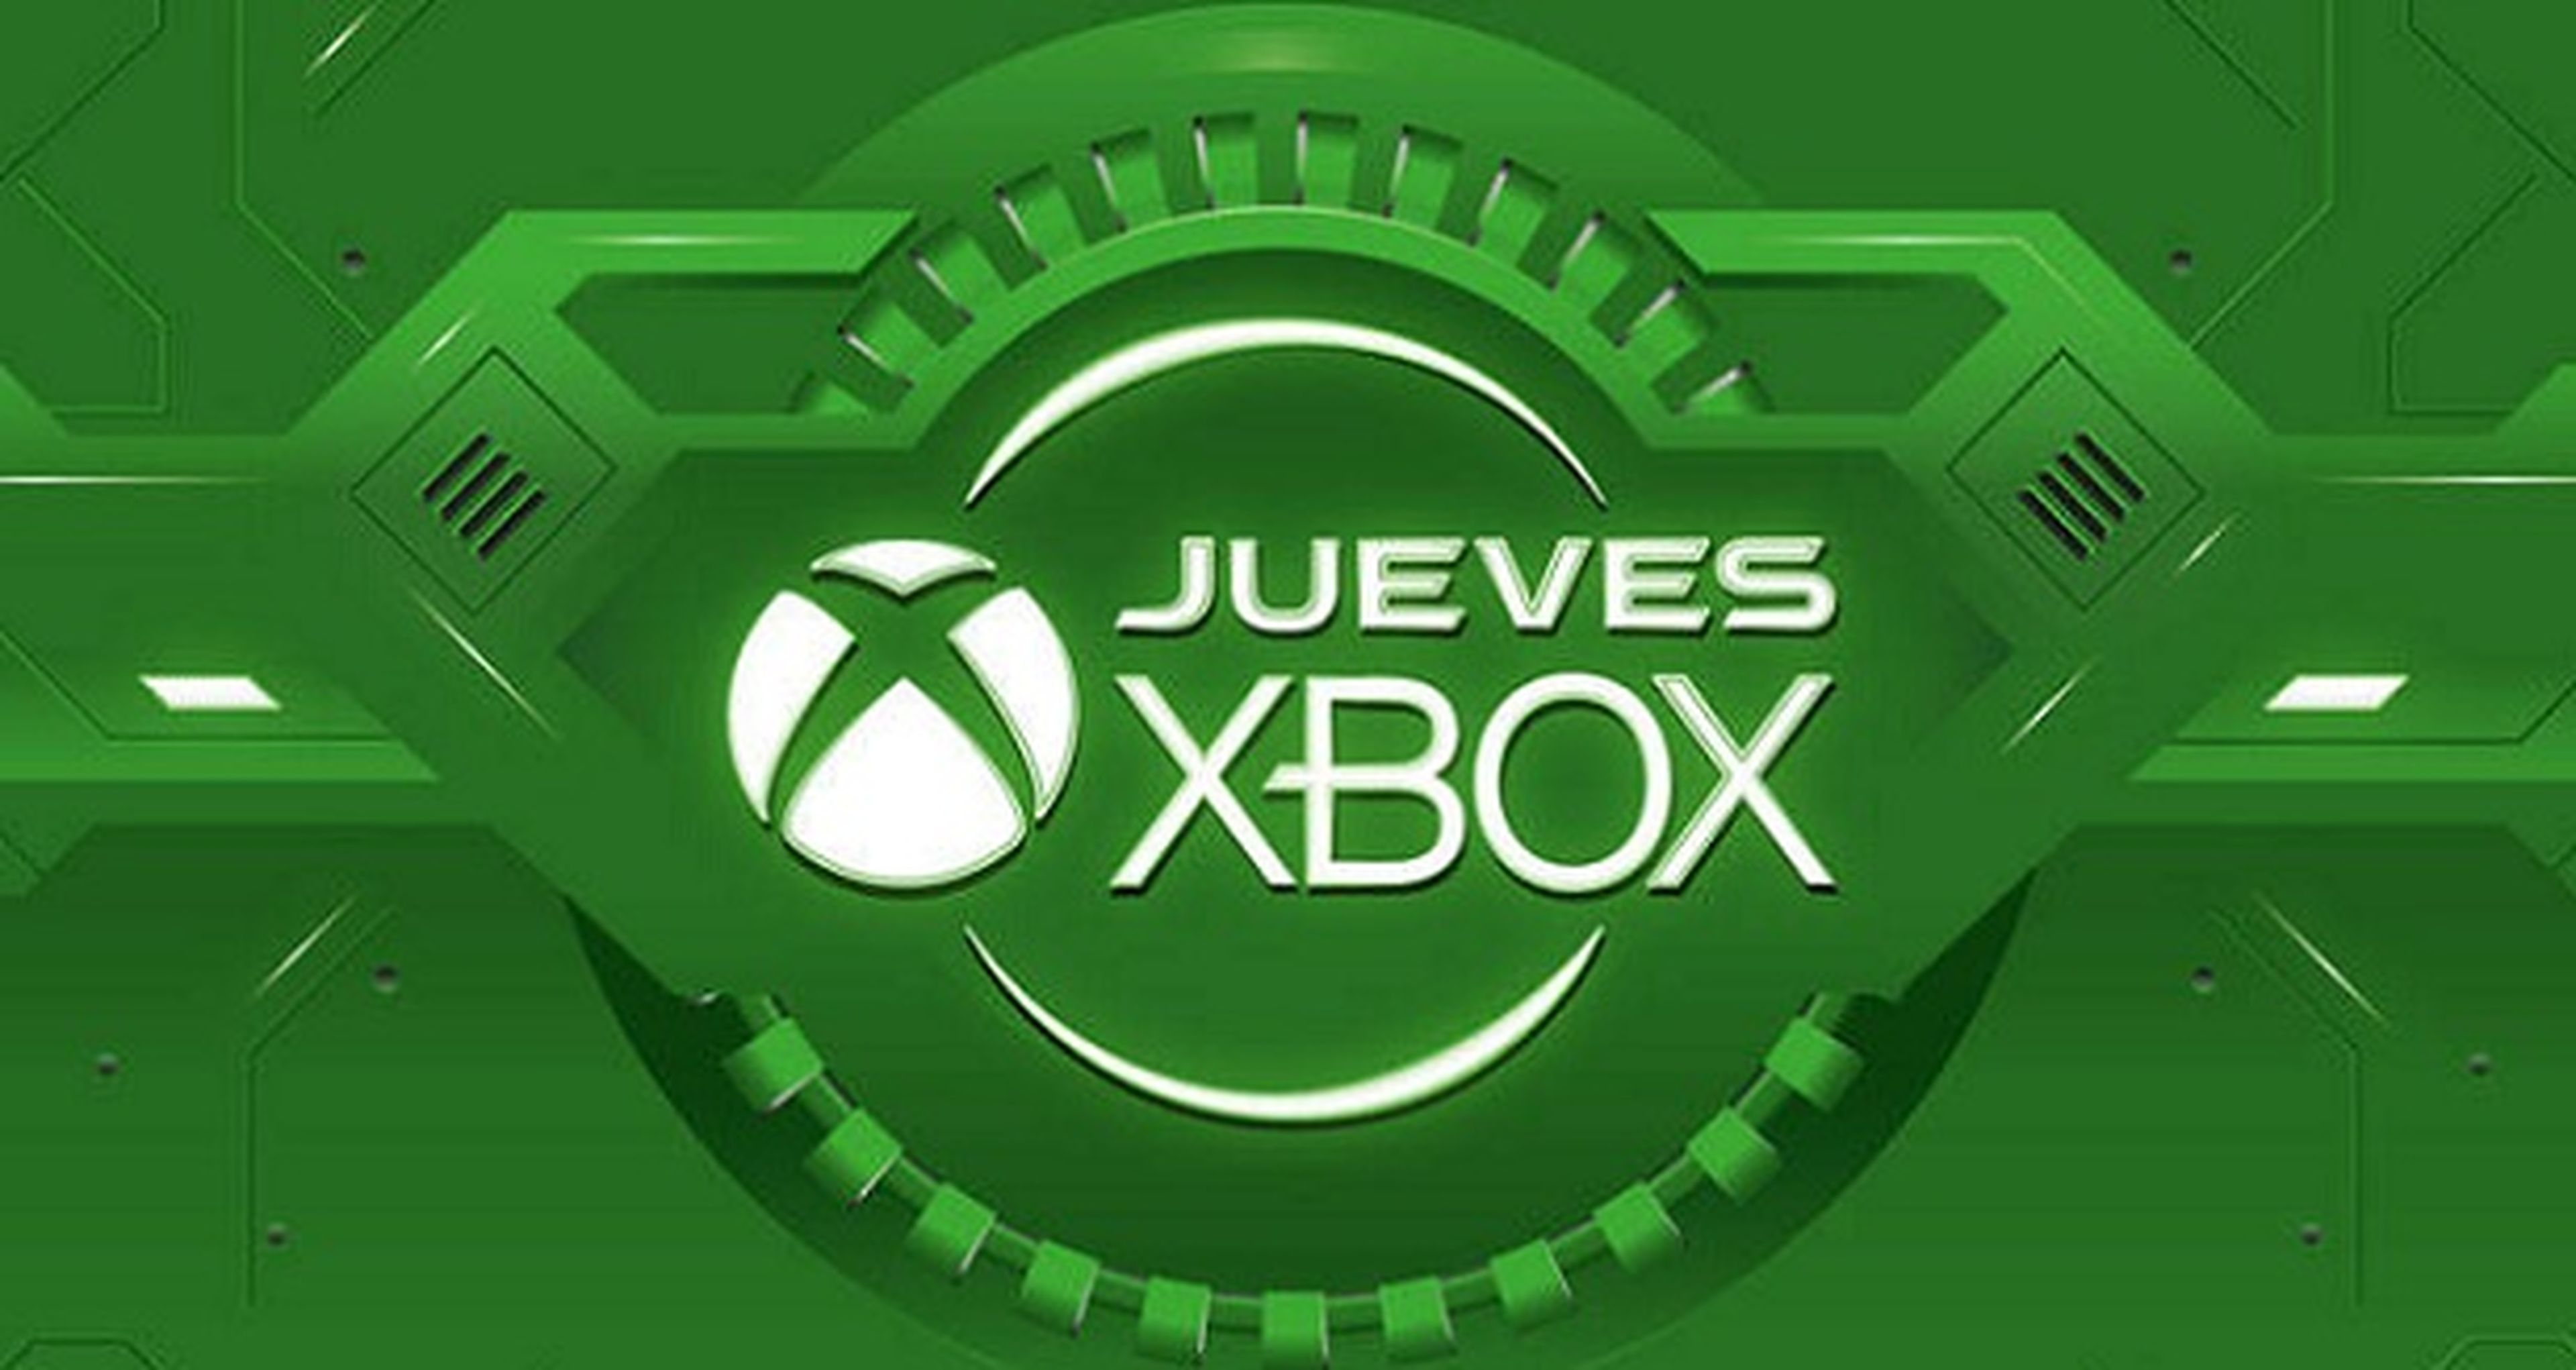 Jueves Xbox en GAME: octava semana de ofertas